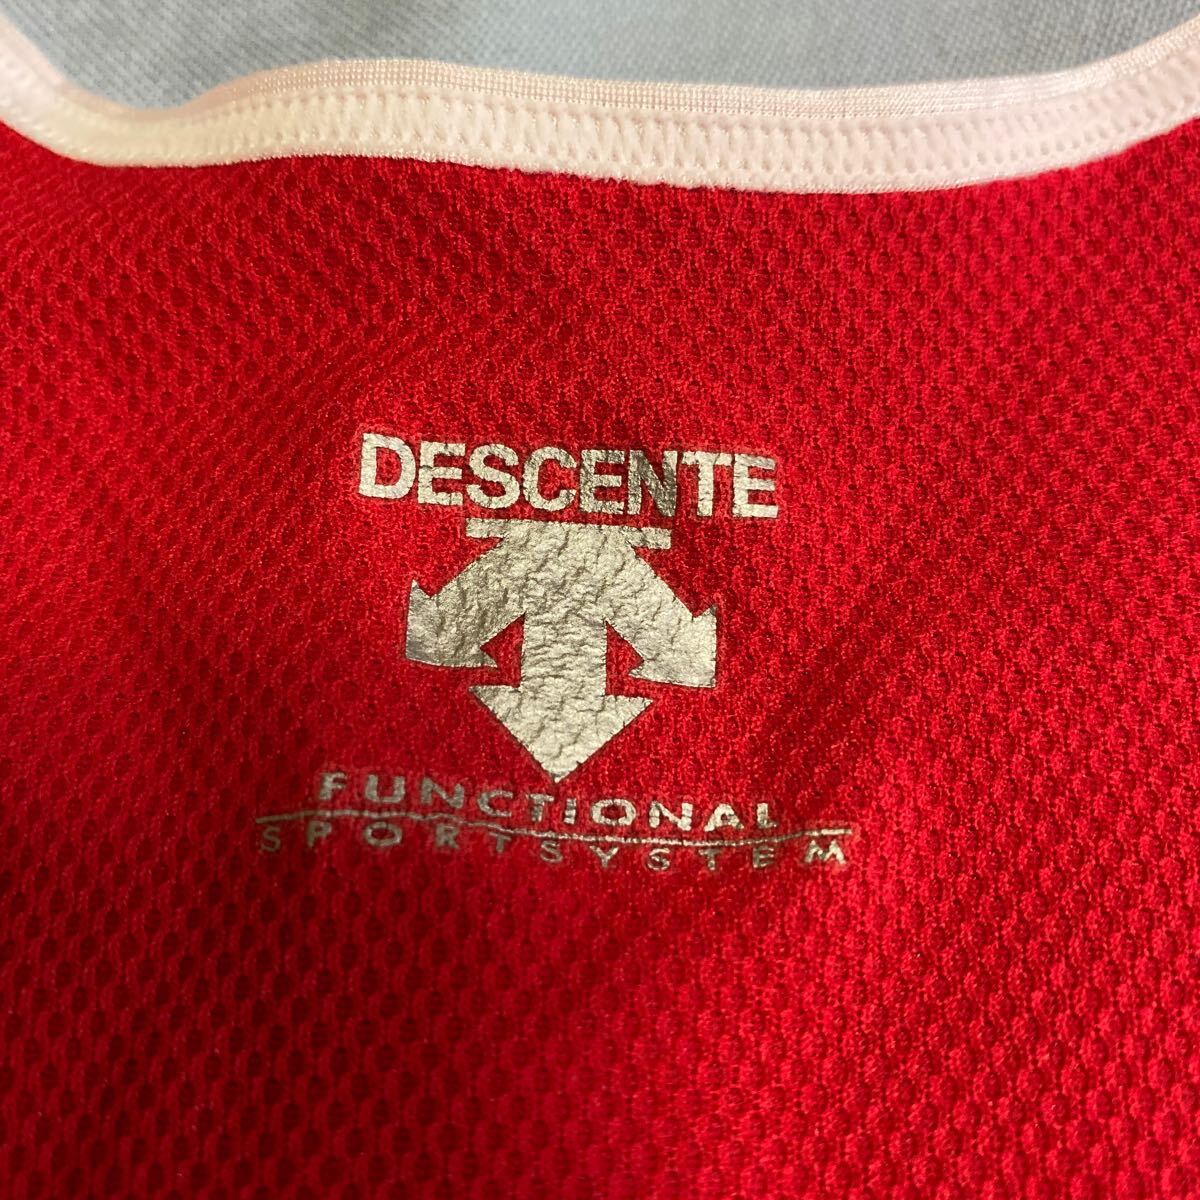 城西大学 DESCENTE ランニングシャツ スポーツ ユニフォーム マラソン 陸上競技部 キャンパスの画像3